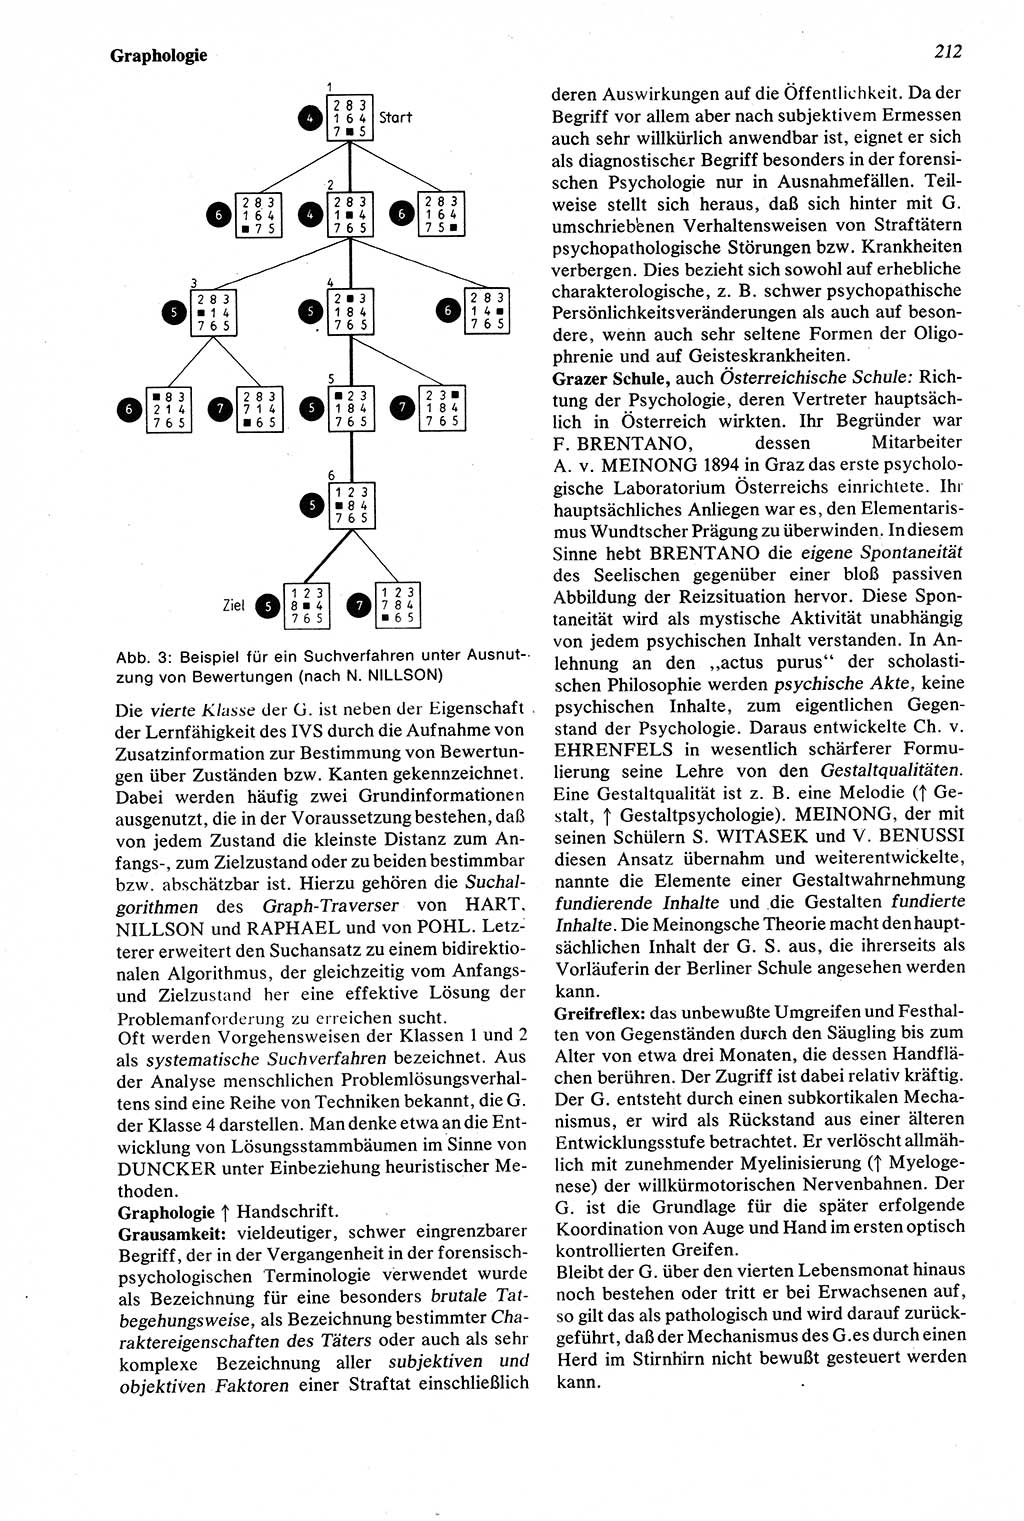 Wörterbuch der Psychologie [Deutsche Demokratische Republik (DDR)] 1976, Seite 212 (Wb. Psych. DDR 1976, S. 212)